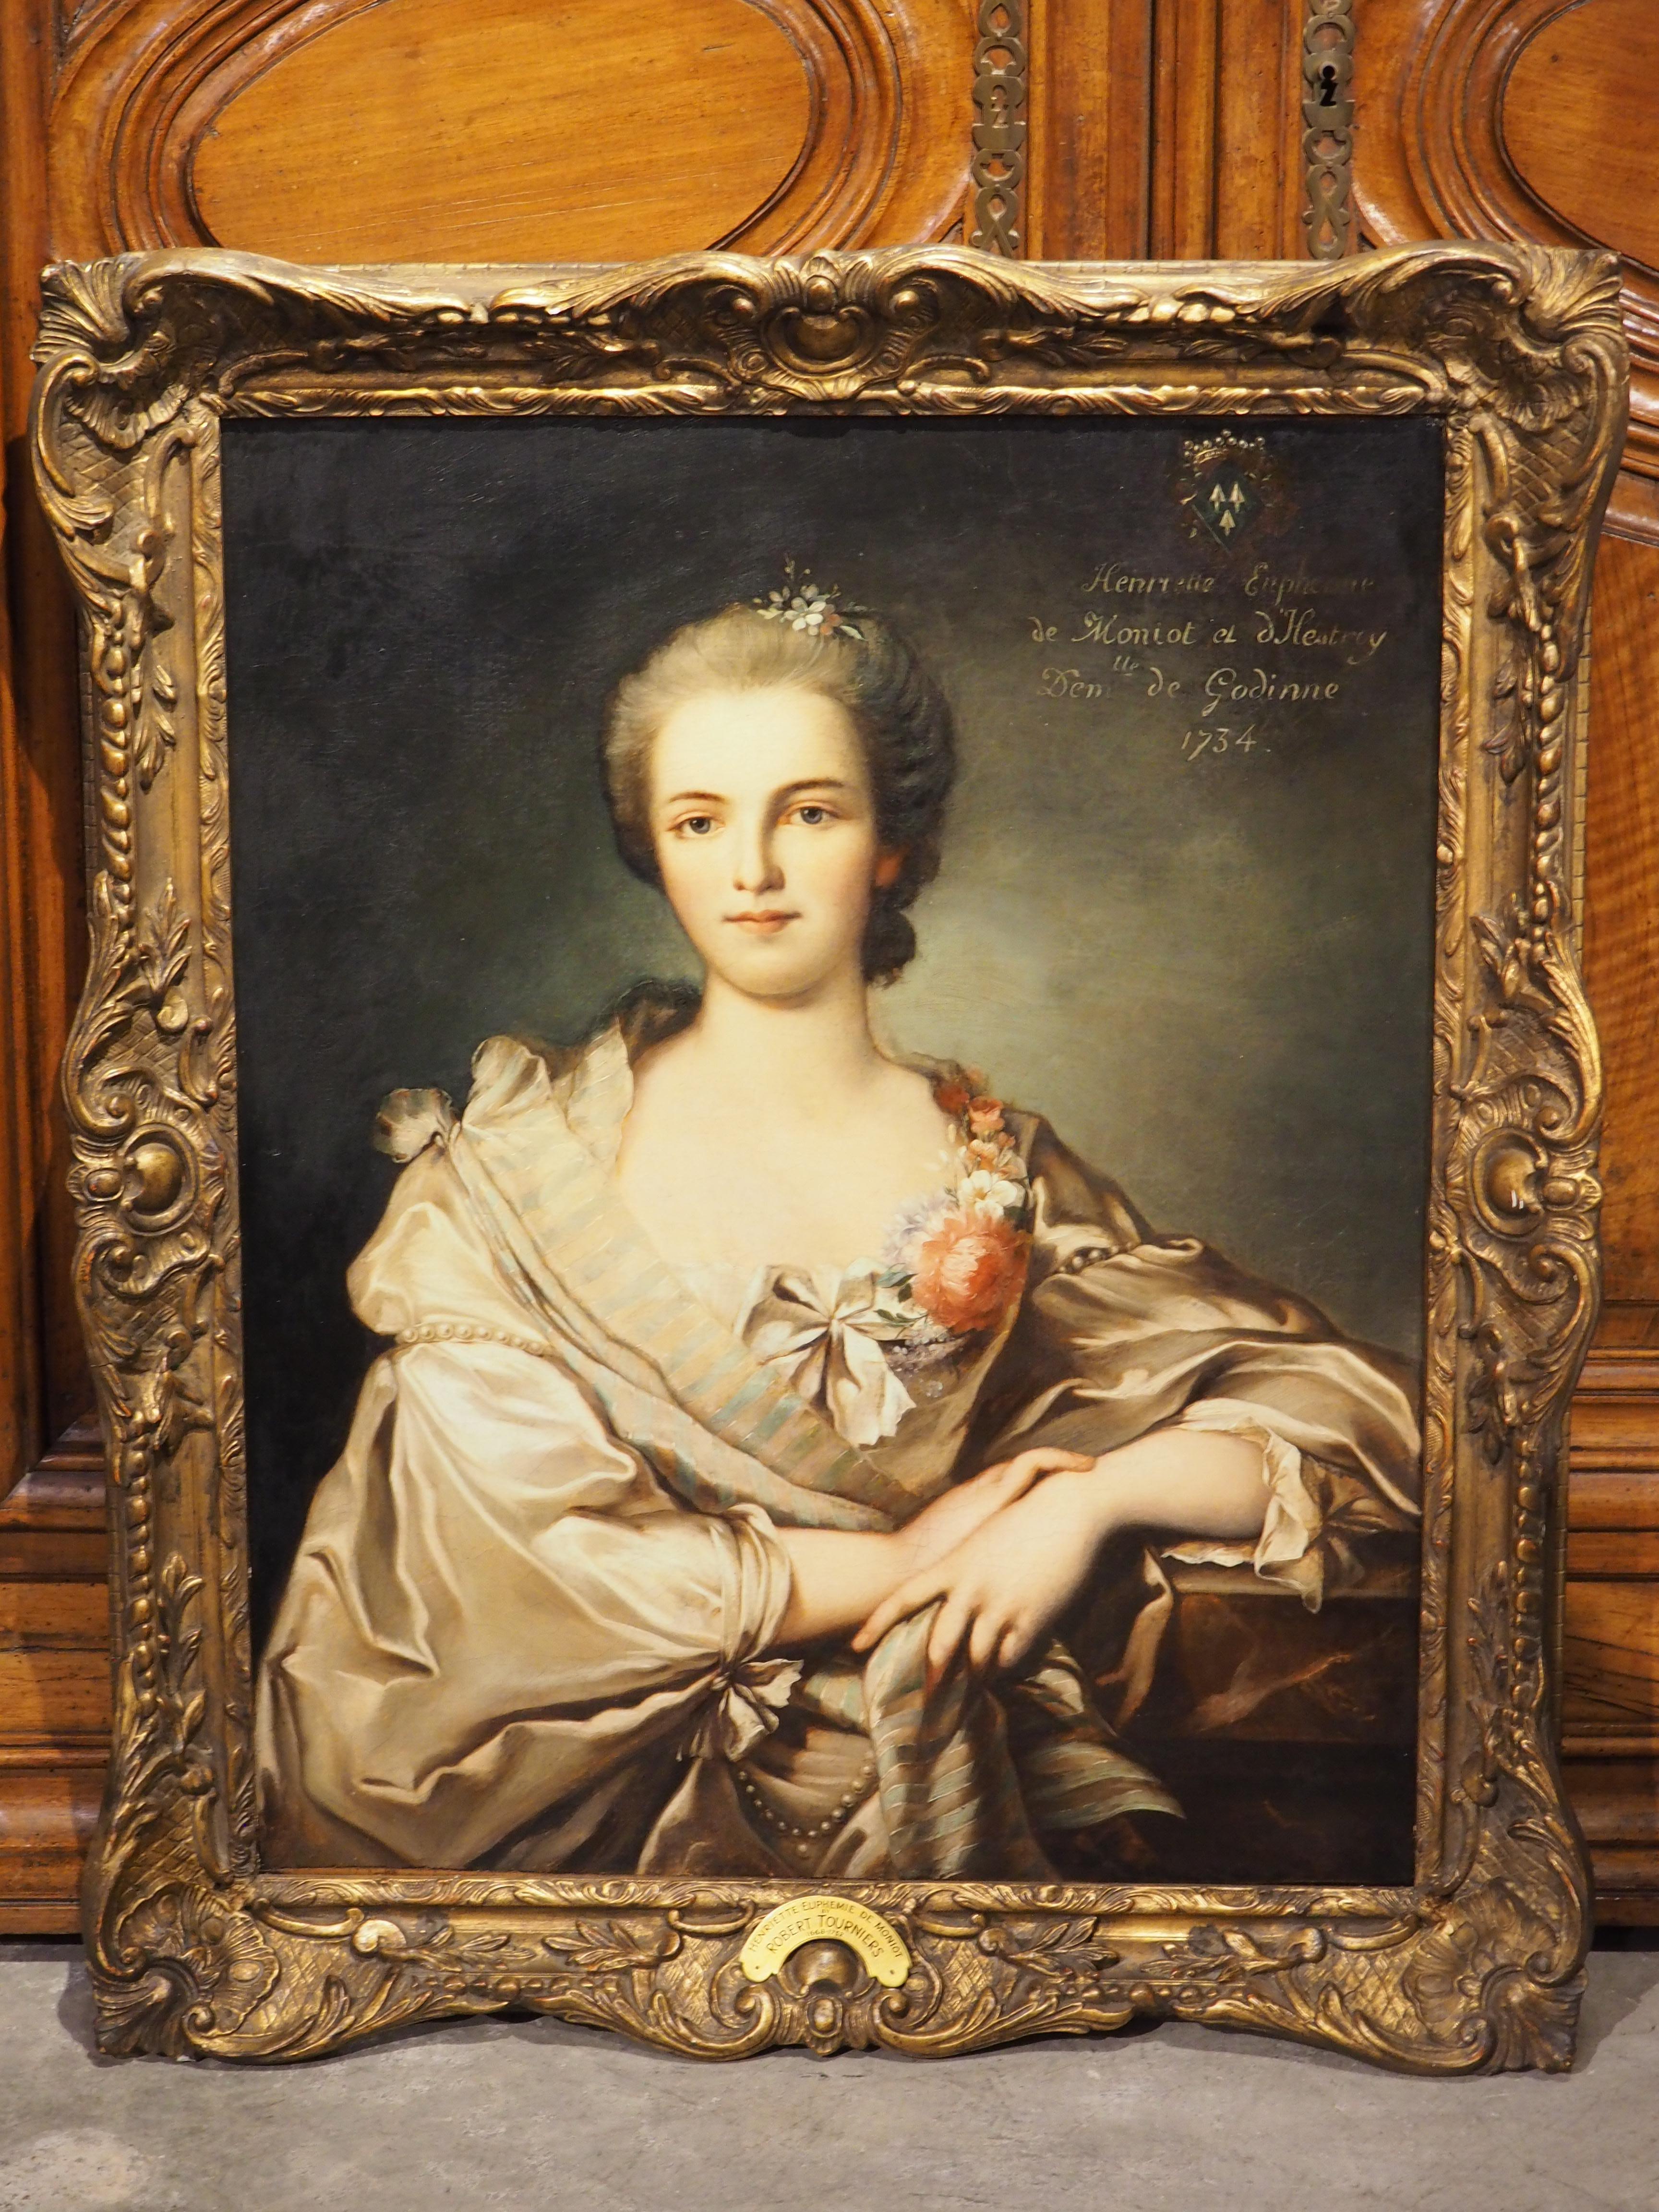 French Oil on Canvas Portrait of Henriette Euphemie de Moniot by Robert Tourniers, 1734